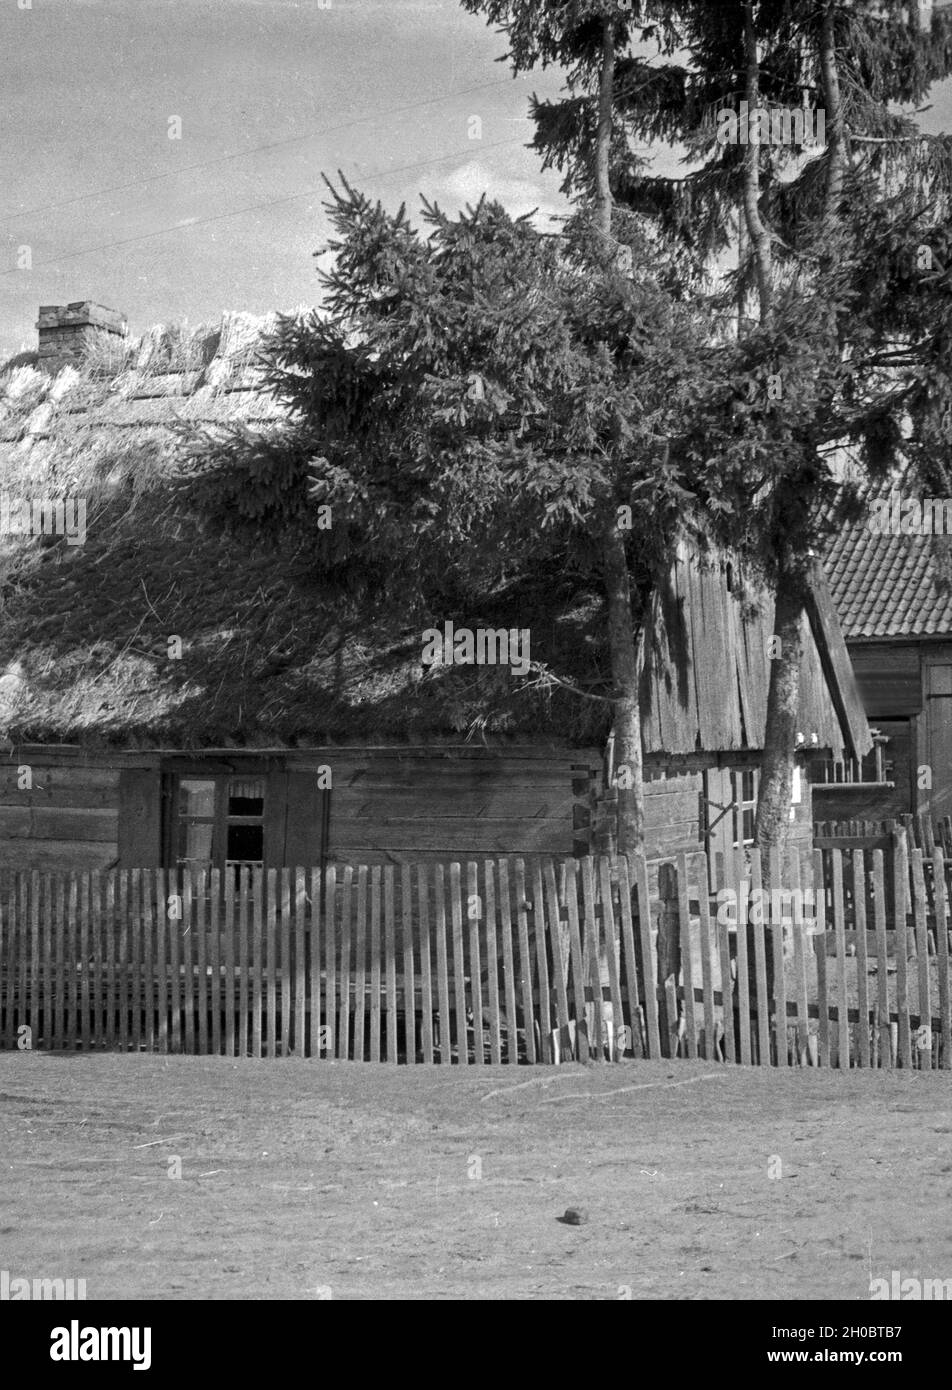 Fischerhaus am Litigainow See in Masuren, Ostpreußen, 1930er Jahre. Fisherman's cottage at Lake Litigainow in Masuria, East Prussia, 1930s. Stock Photo